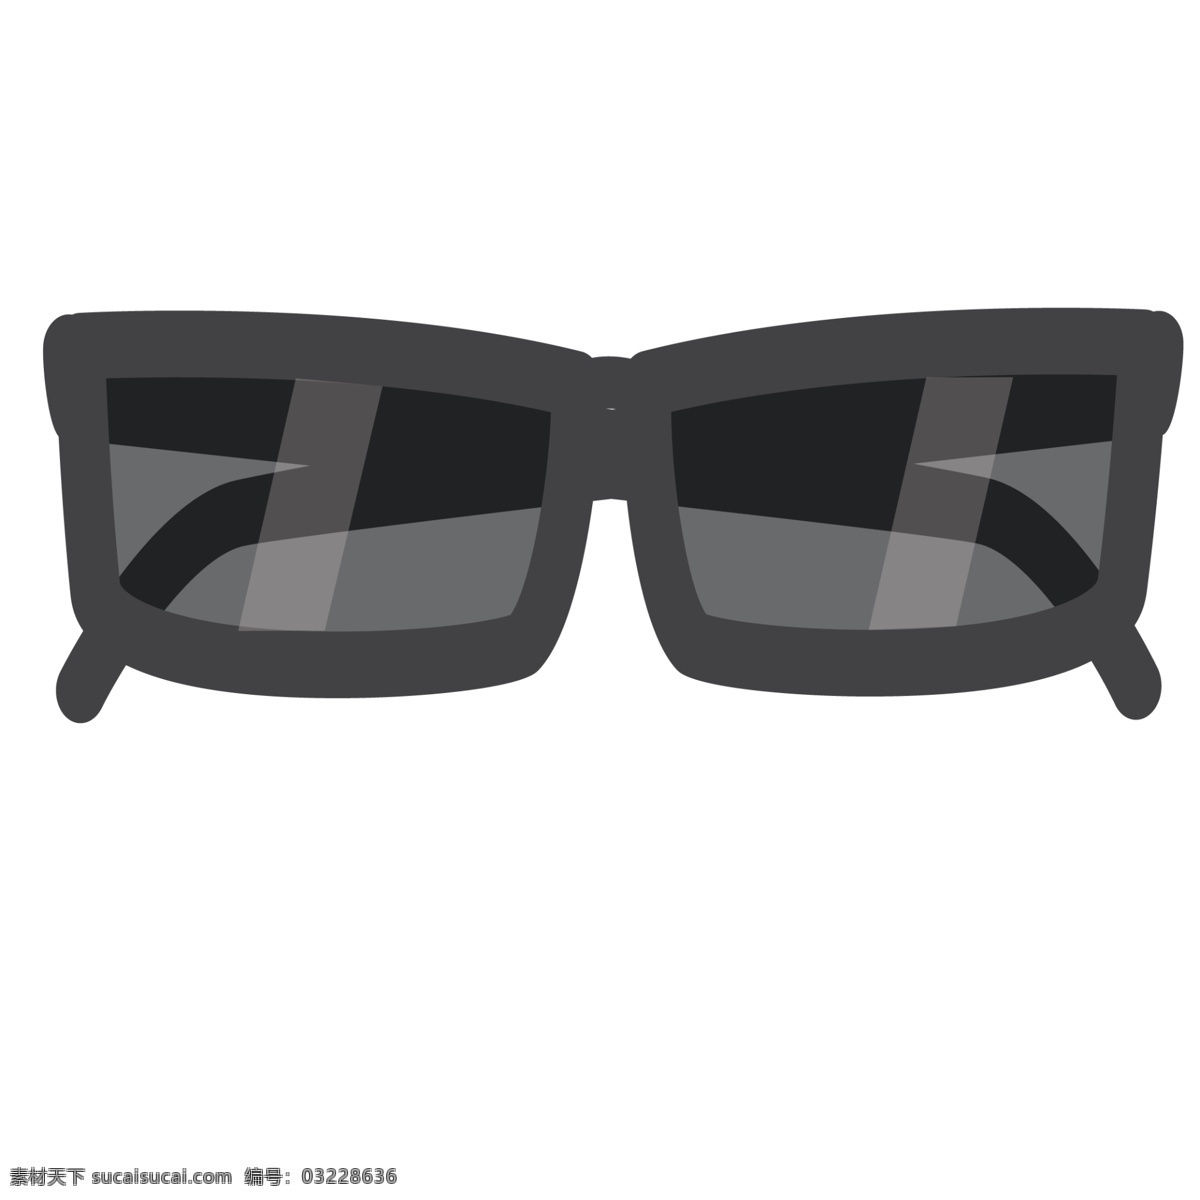 黑色 墨镜 免 抠 图 卡通墨镜 黑色眼睛 黑框眼镜 卡通 眼镜 晒太阳